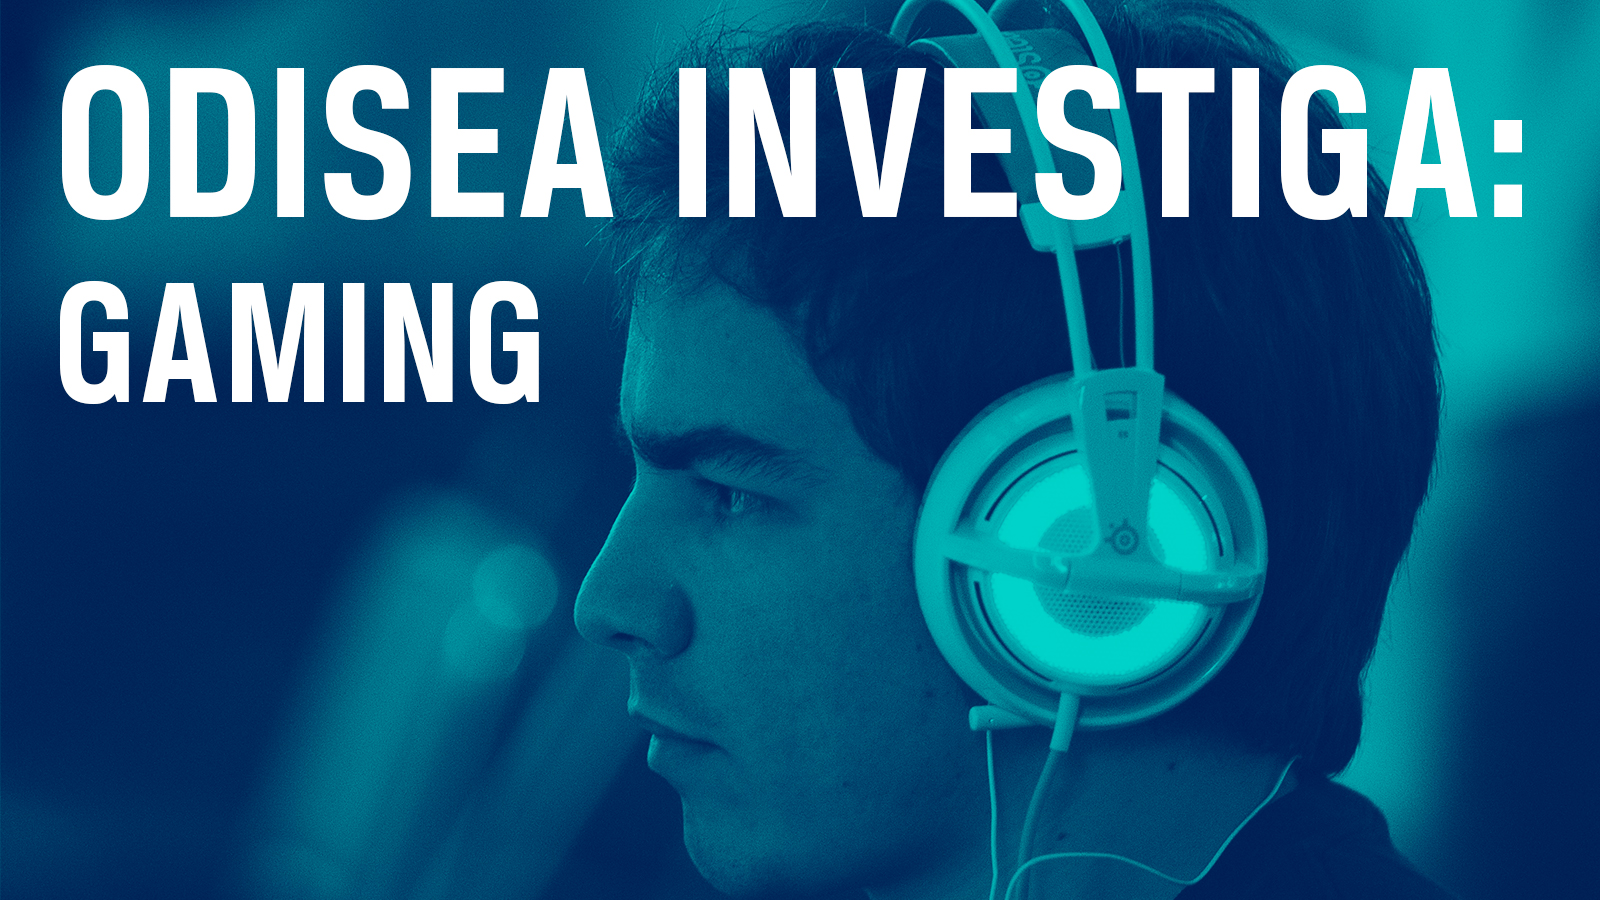 Odisea investiga: Gaming